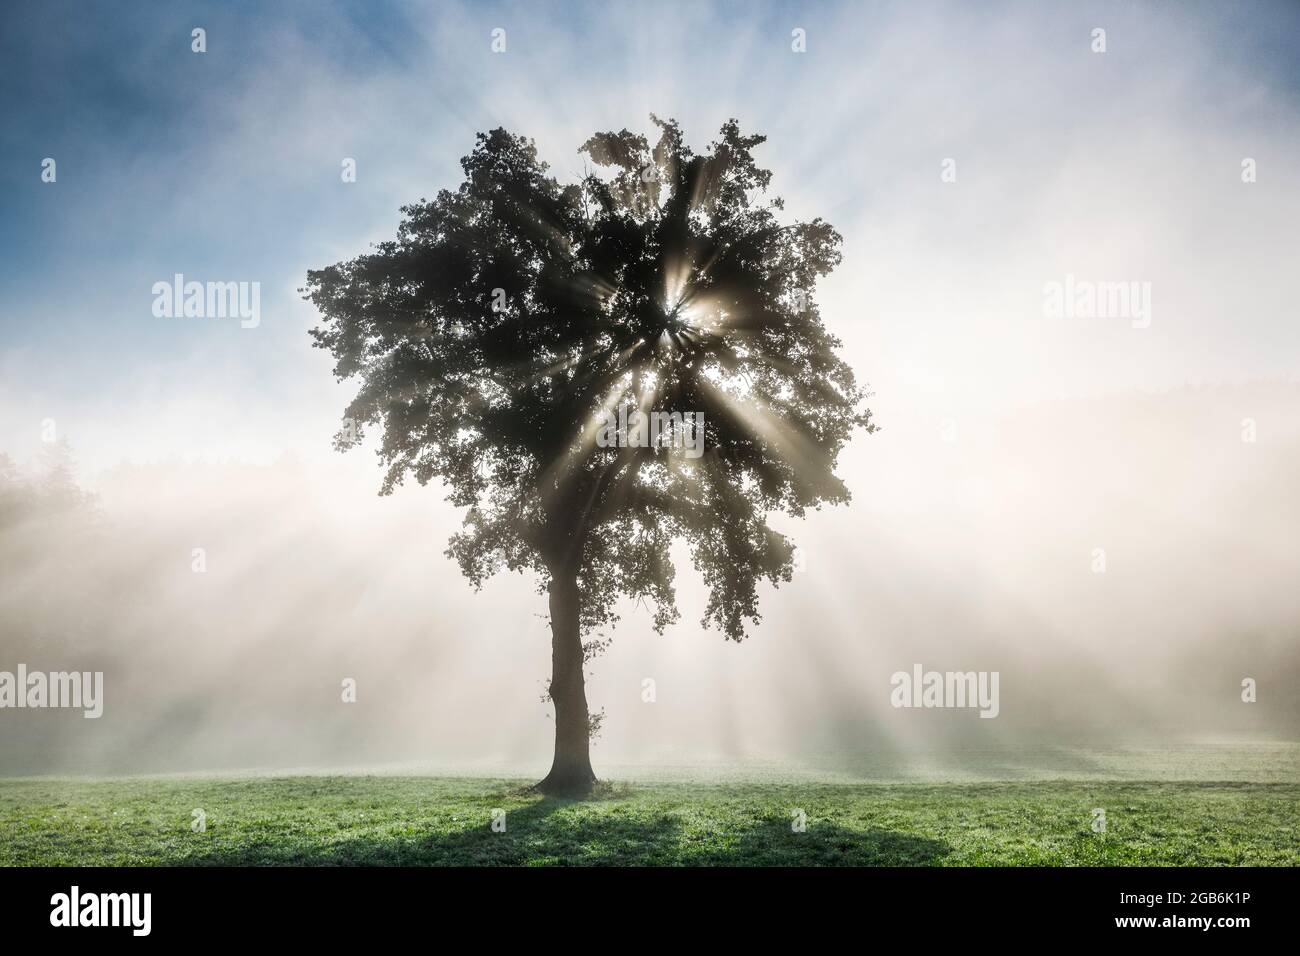 botanik, Eiche, ein Baum im Nebel, Berner Oberland, Schweiz, NICHT-EXKLUSIV-VERWENDUNG FÜR FALTKARTEN-GRUSSKARTEN-POSTKARTEN-VERWENDUNG Stockfoto